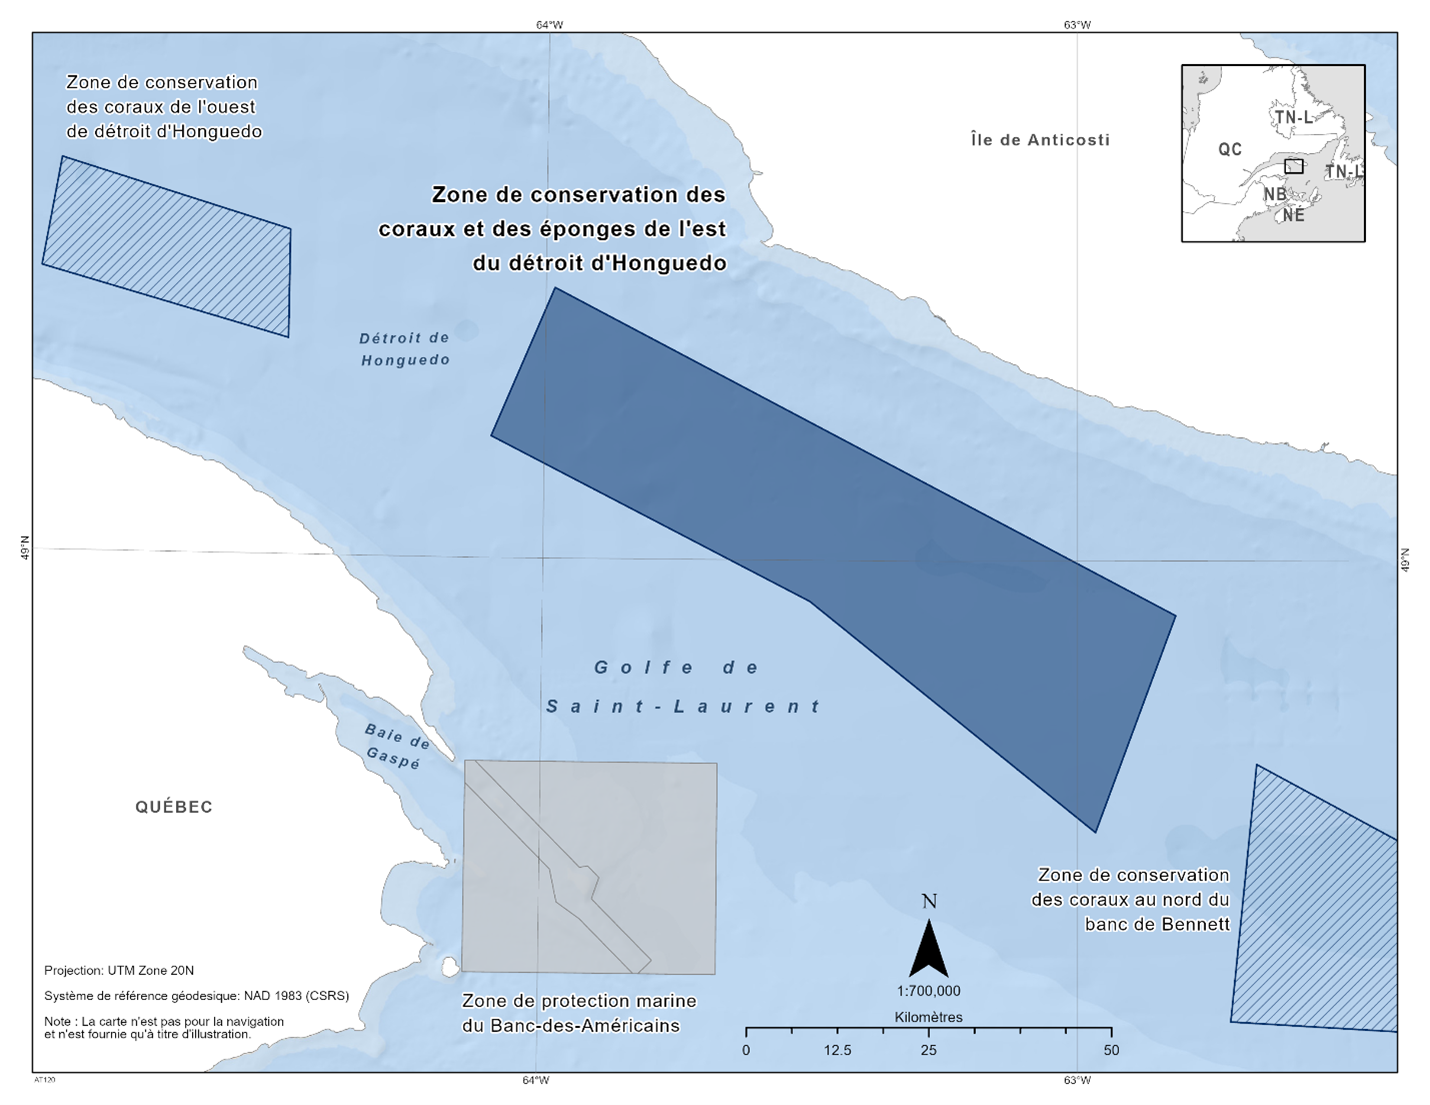 Carte de la zone de conservation des corail et des éponge du détroit d'Honguedo oriental représentée en bleu foncé. La carte indique également les refuges marins voisins par des lignes diagonales bleu foncé (zone de conservation du corail du détroit d'Honguedo occidental et zone de conservation du corail du nord du banc de Bennett).